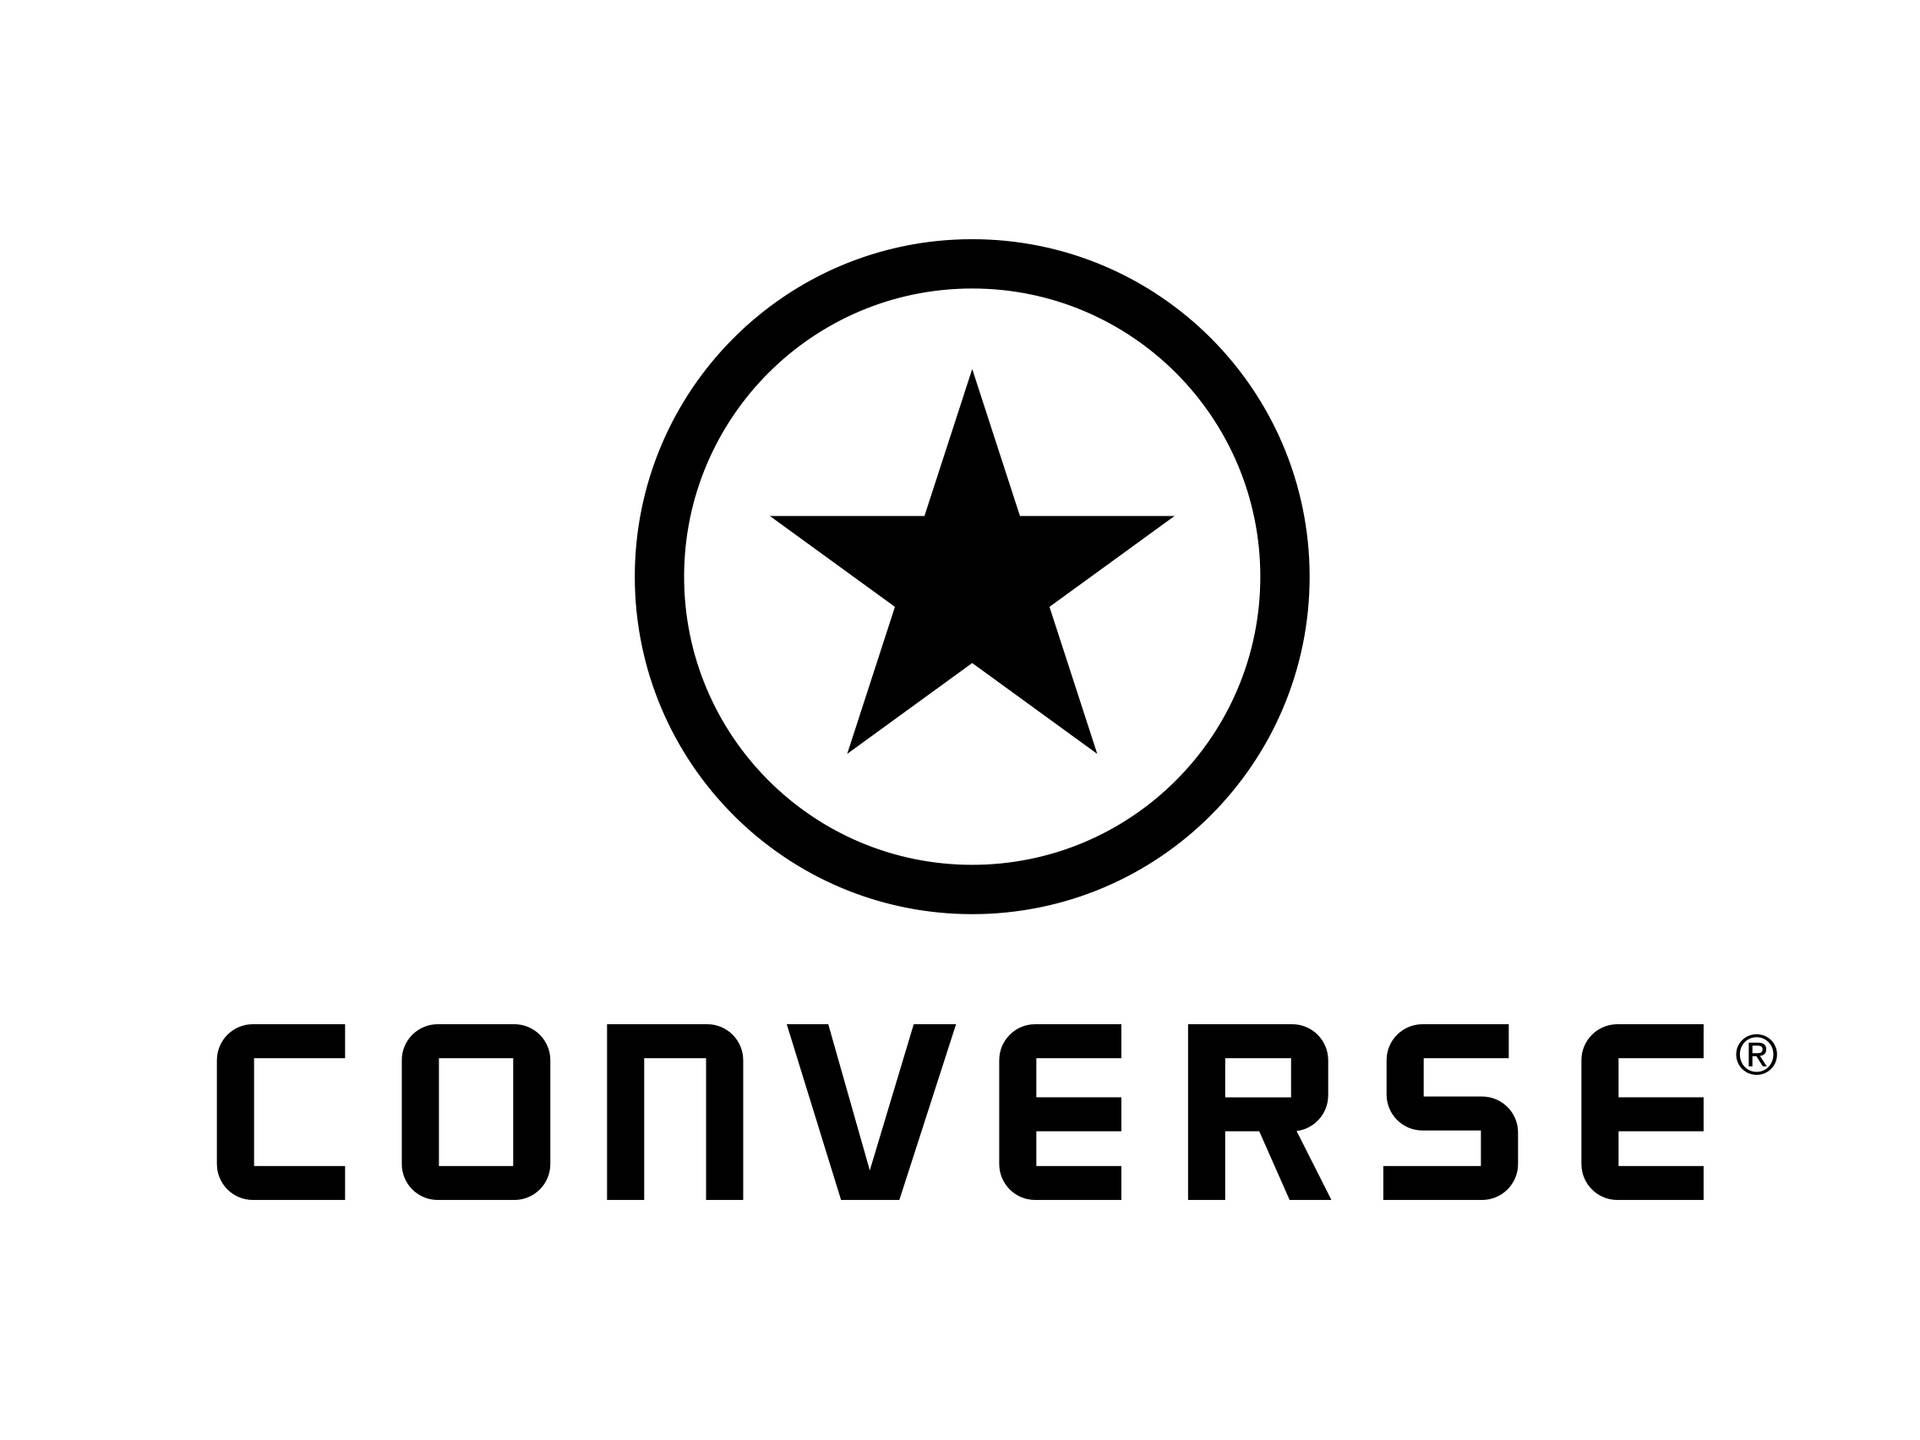 2003 Svart Converse Logo Wallpaper